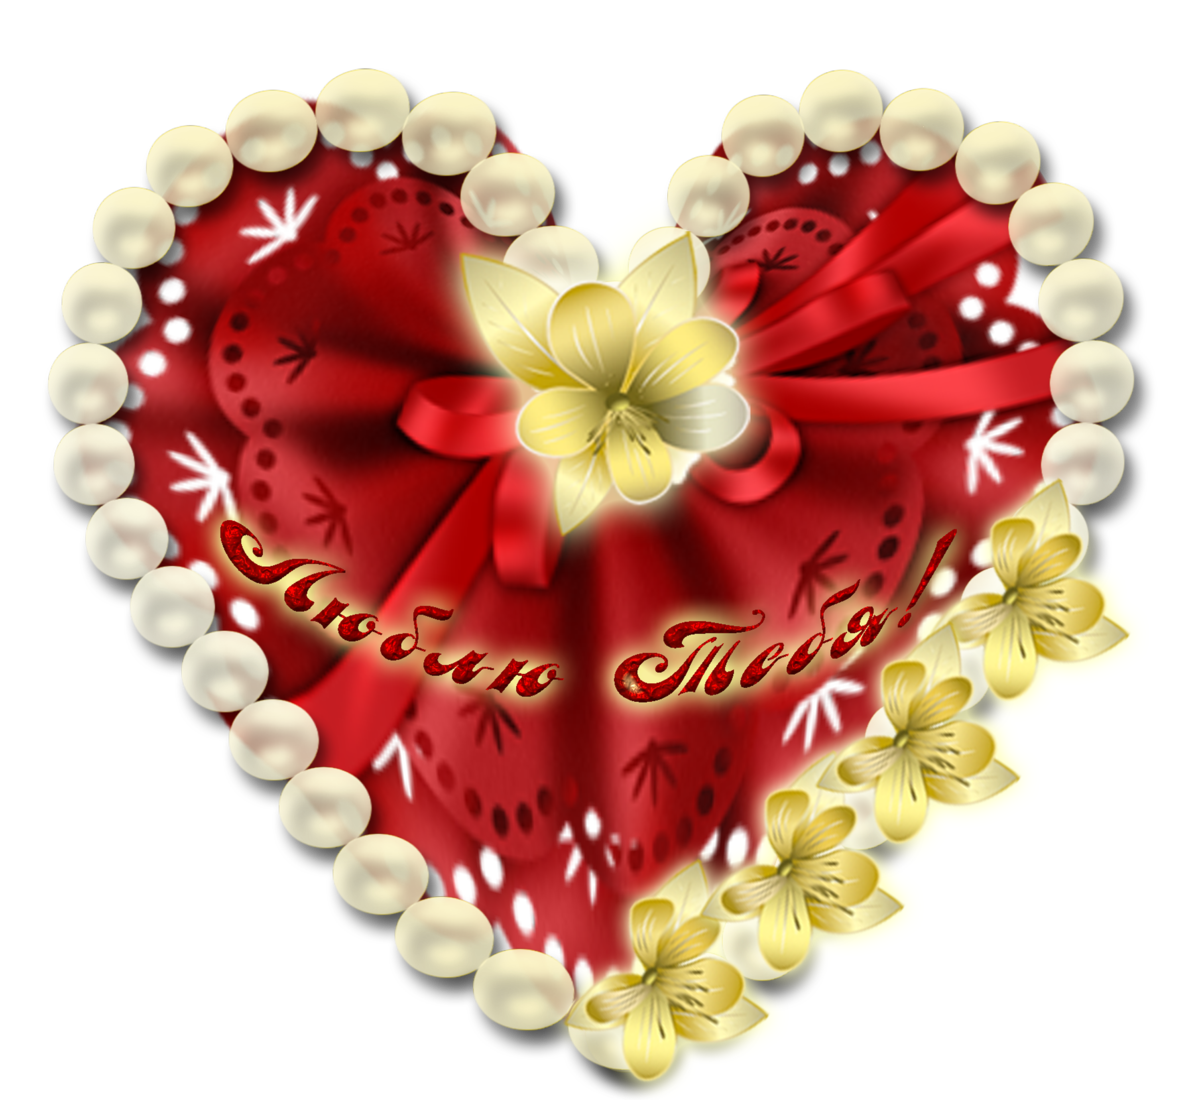 Валентинки своими руками станут прекрасным подарком на 14 февраля